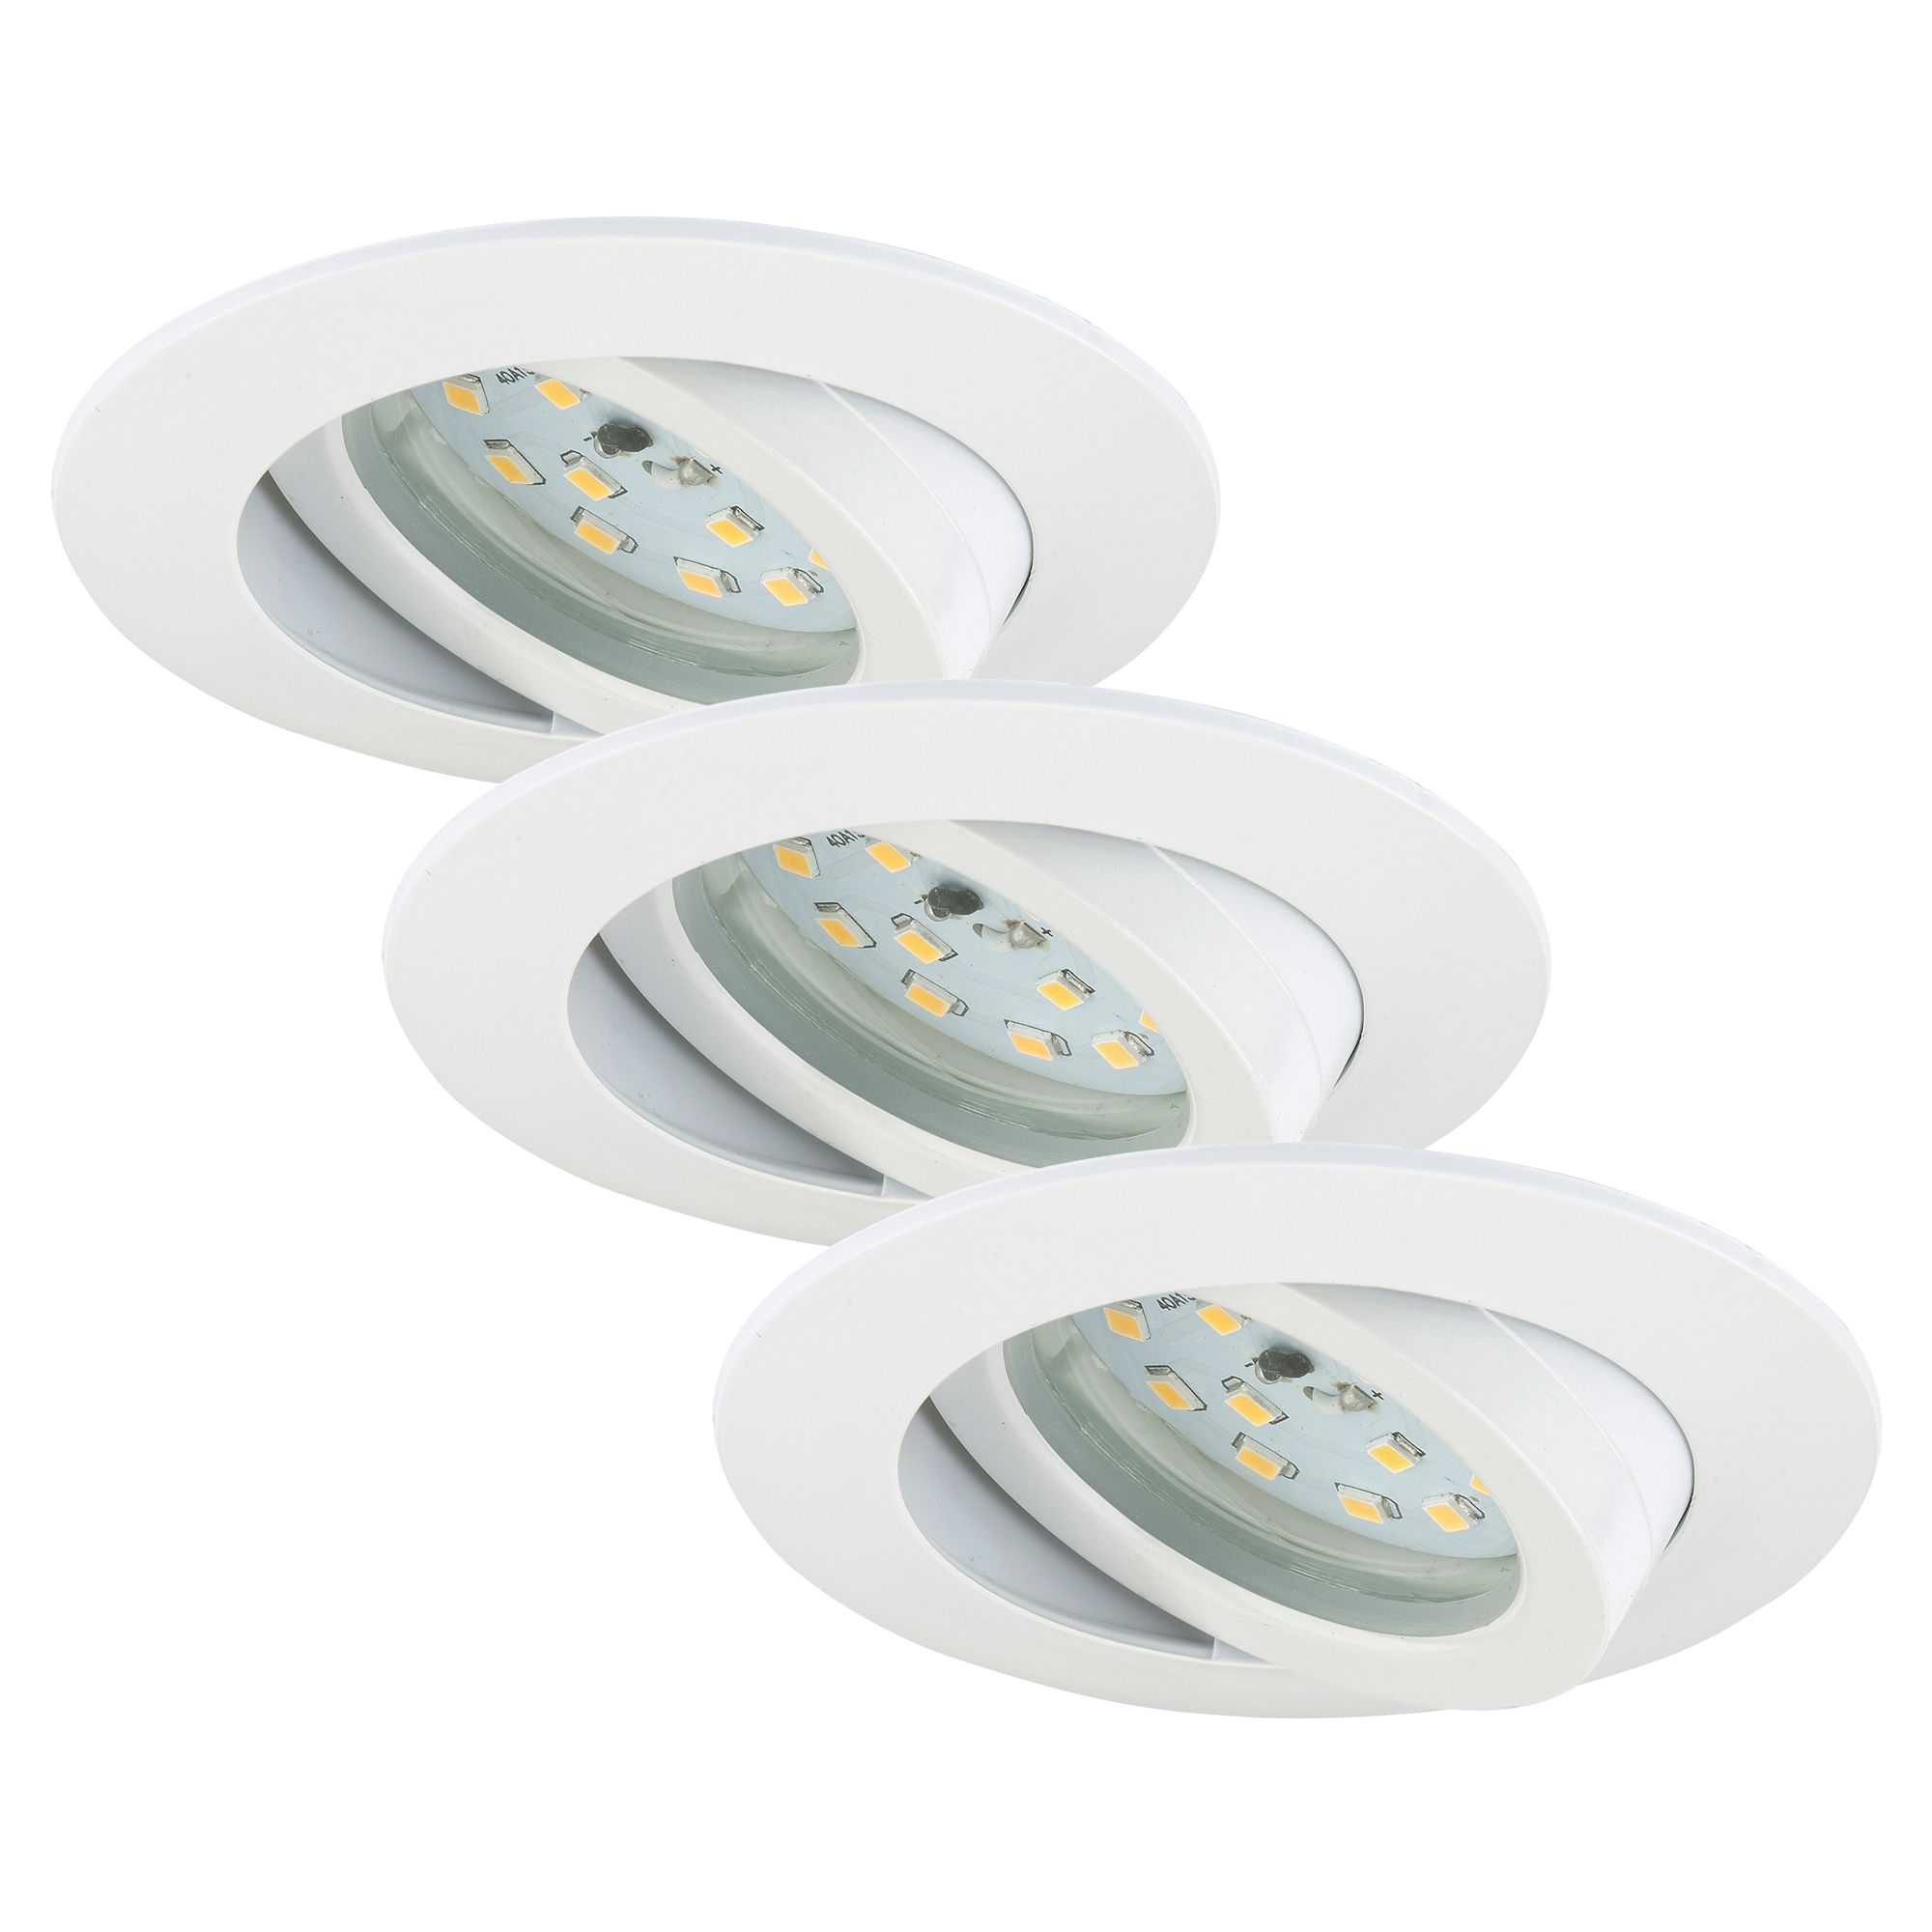 LED-Einbauleuchten dimm- und schwenkbar 5,5 W 3 Stück weiß + product picture